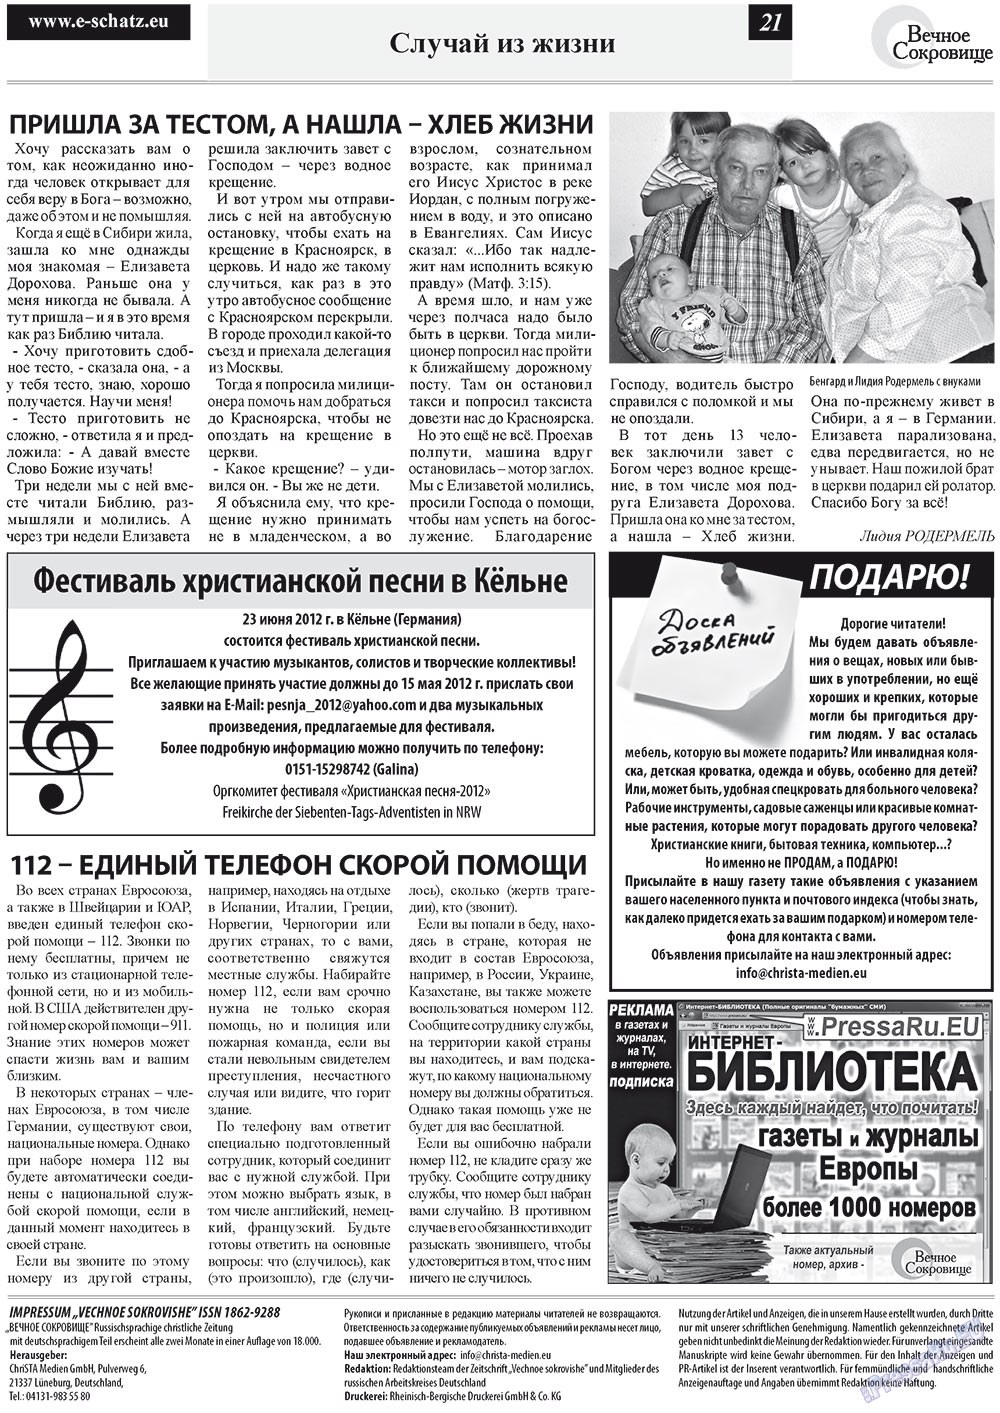 Вечное сокровище (газета). 2012 год, номер 2, стр. 21